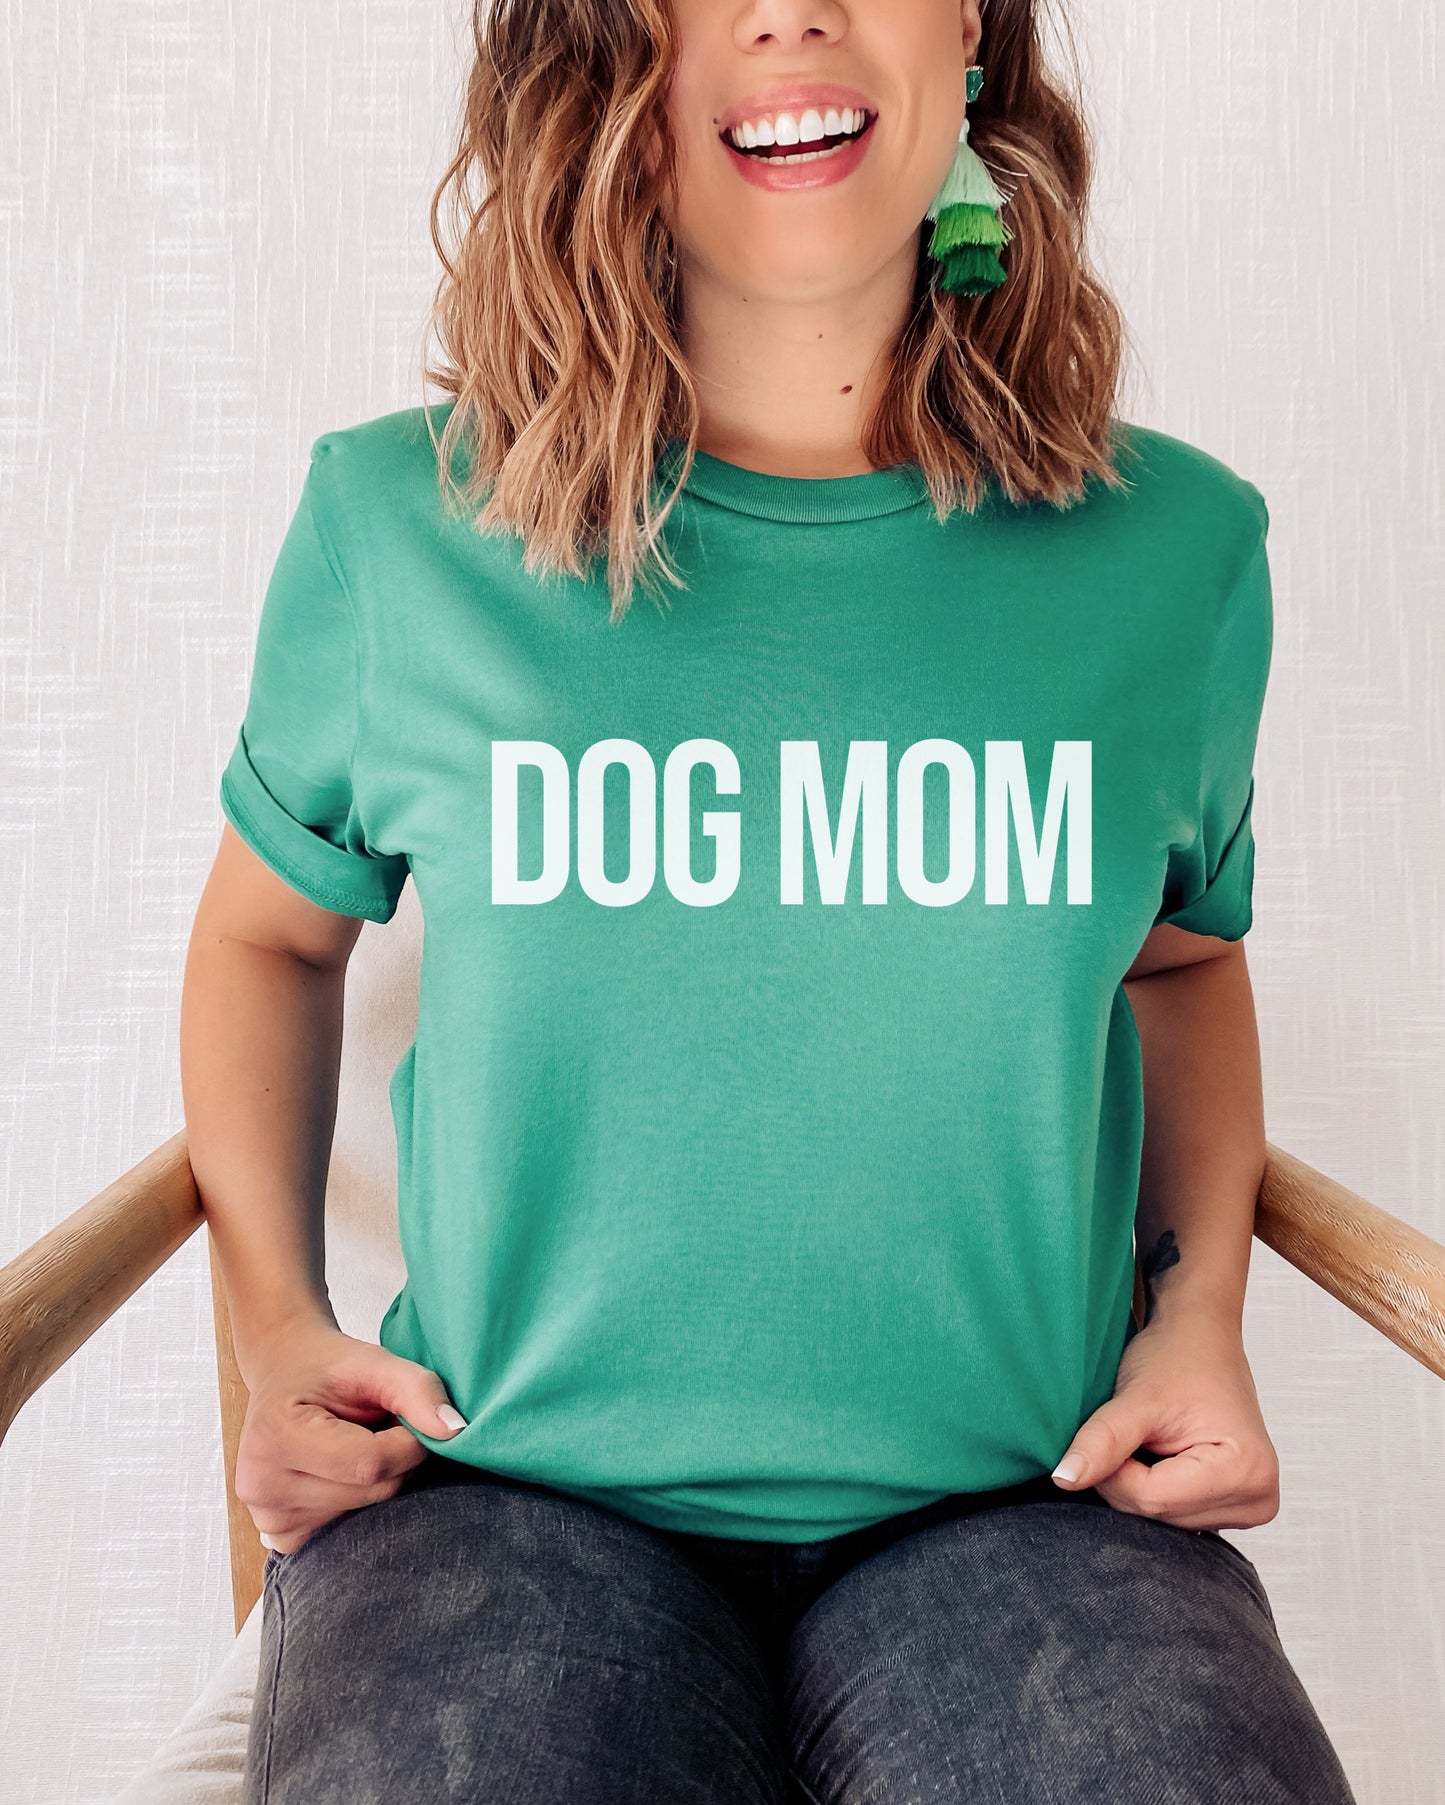 DOG MOM - GREEN TSHIRT